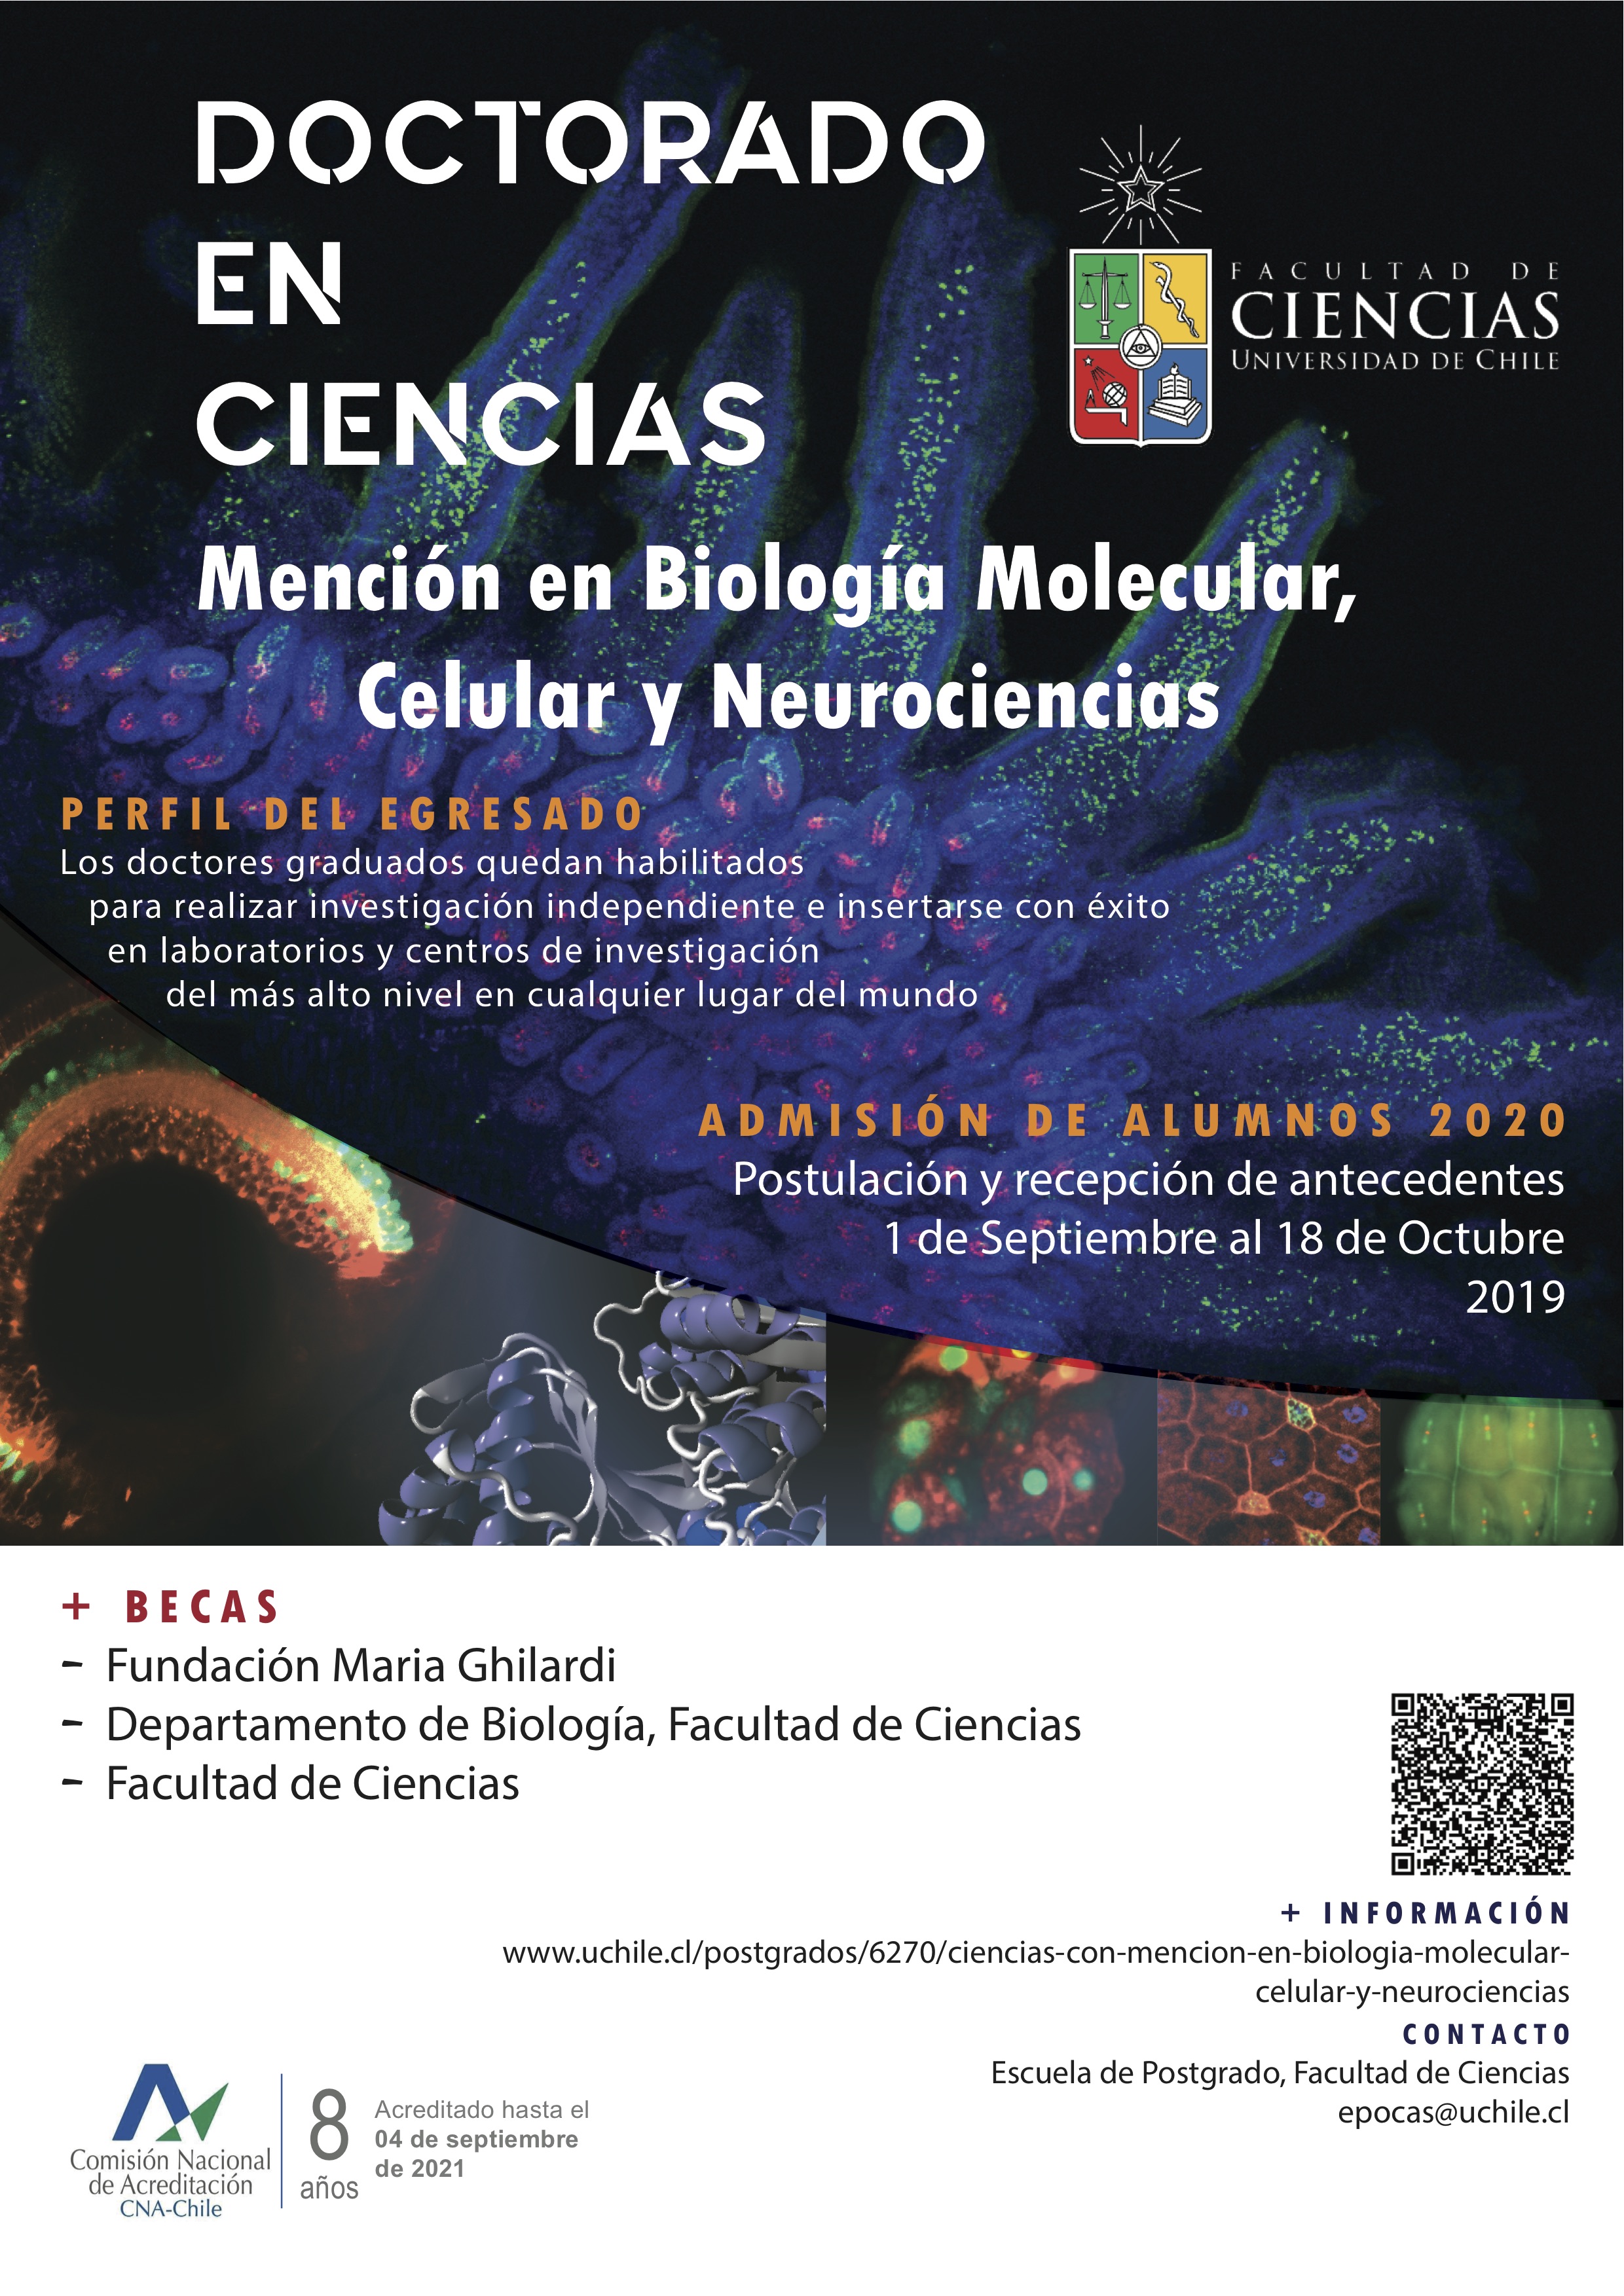 Doctorado en Ciencias, Universidad de Chile graphic